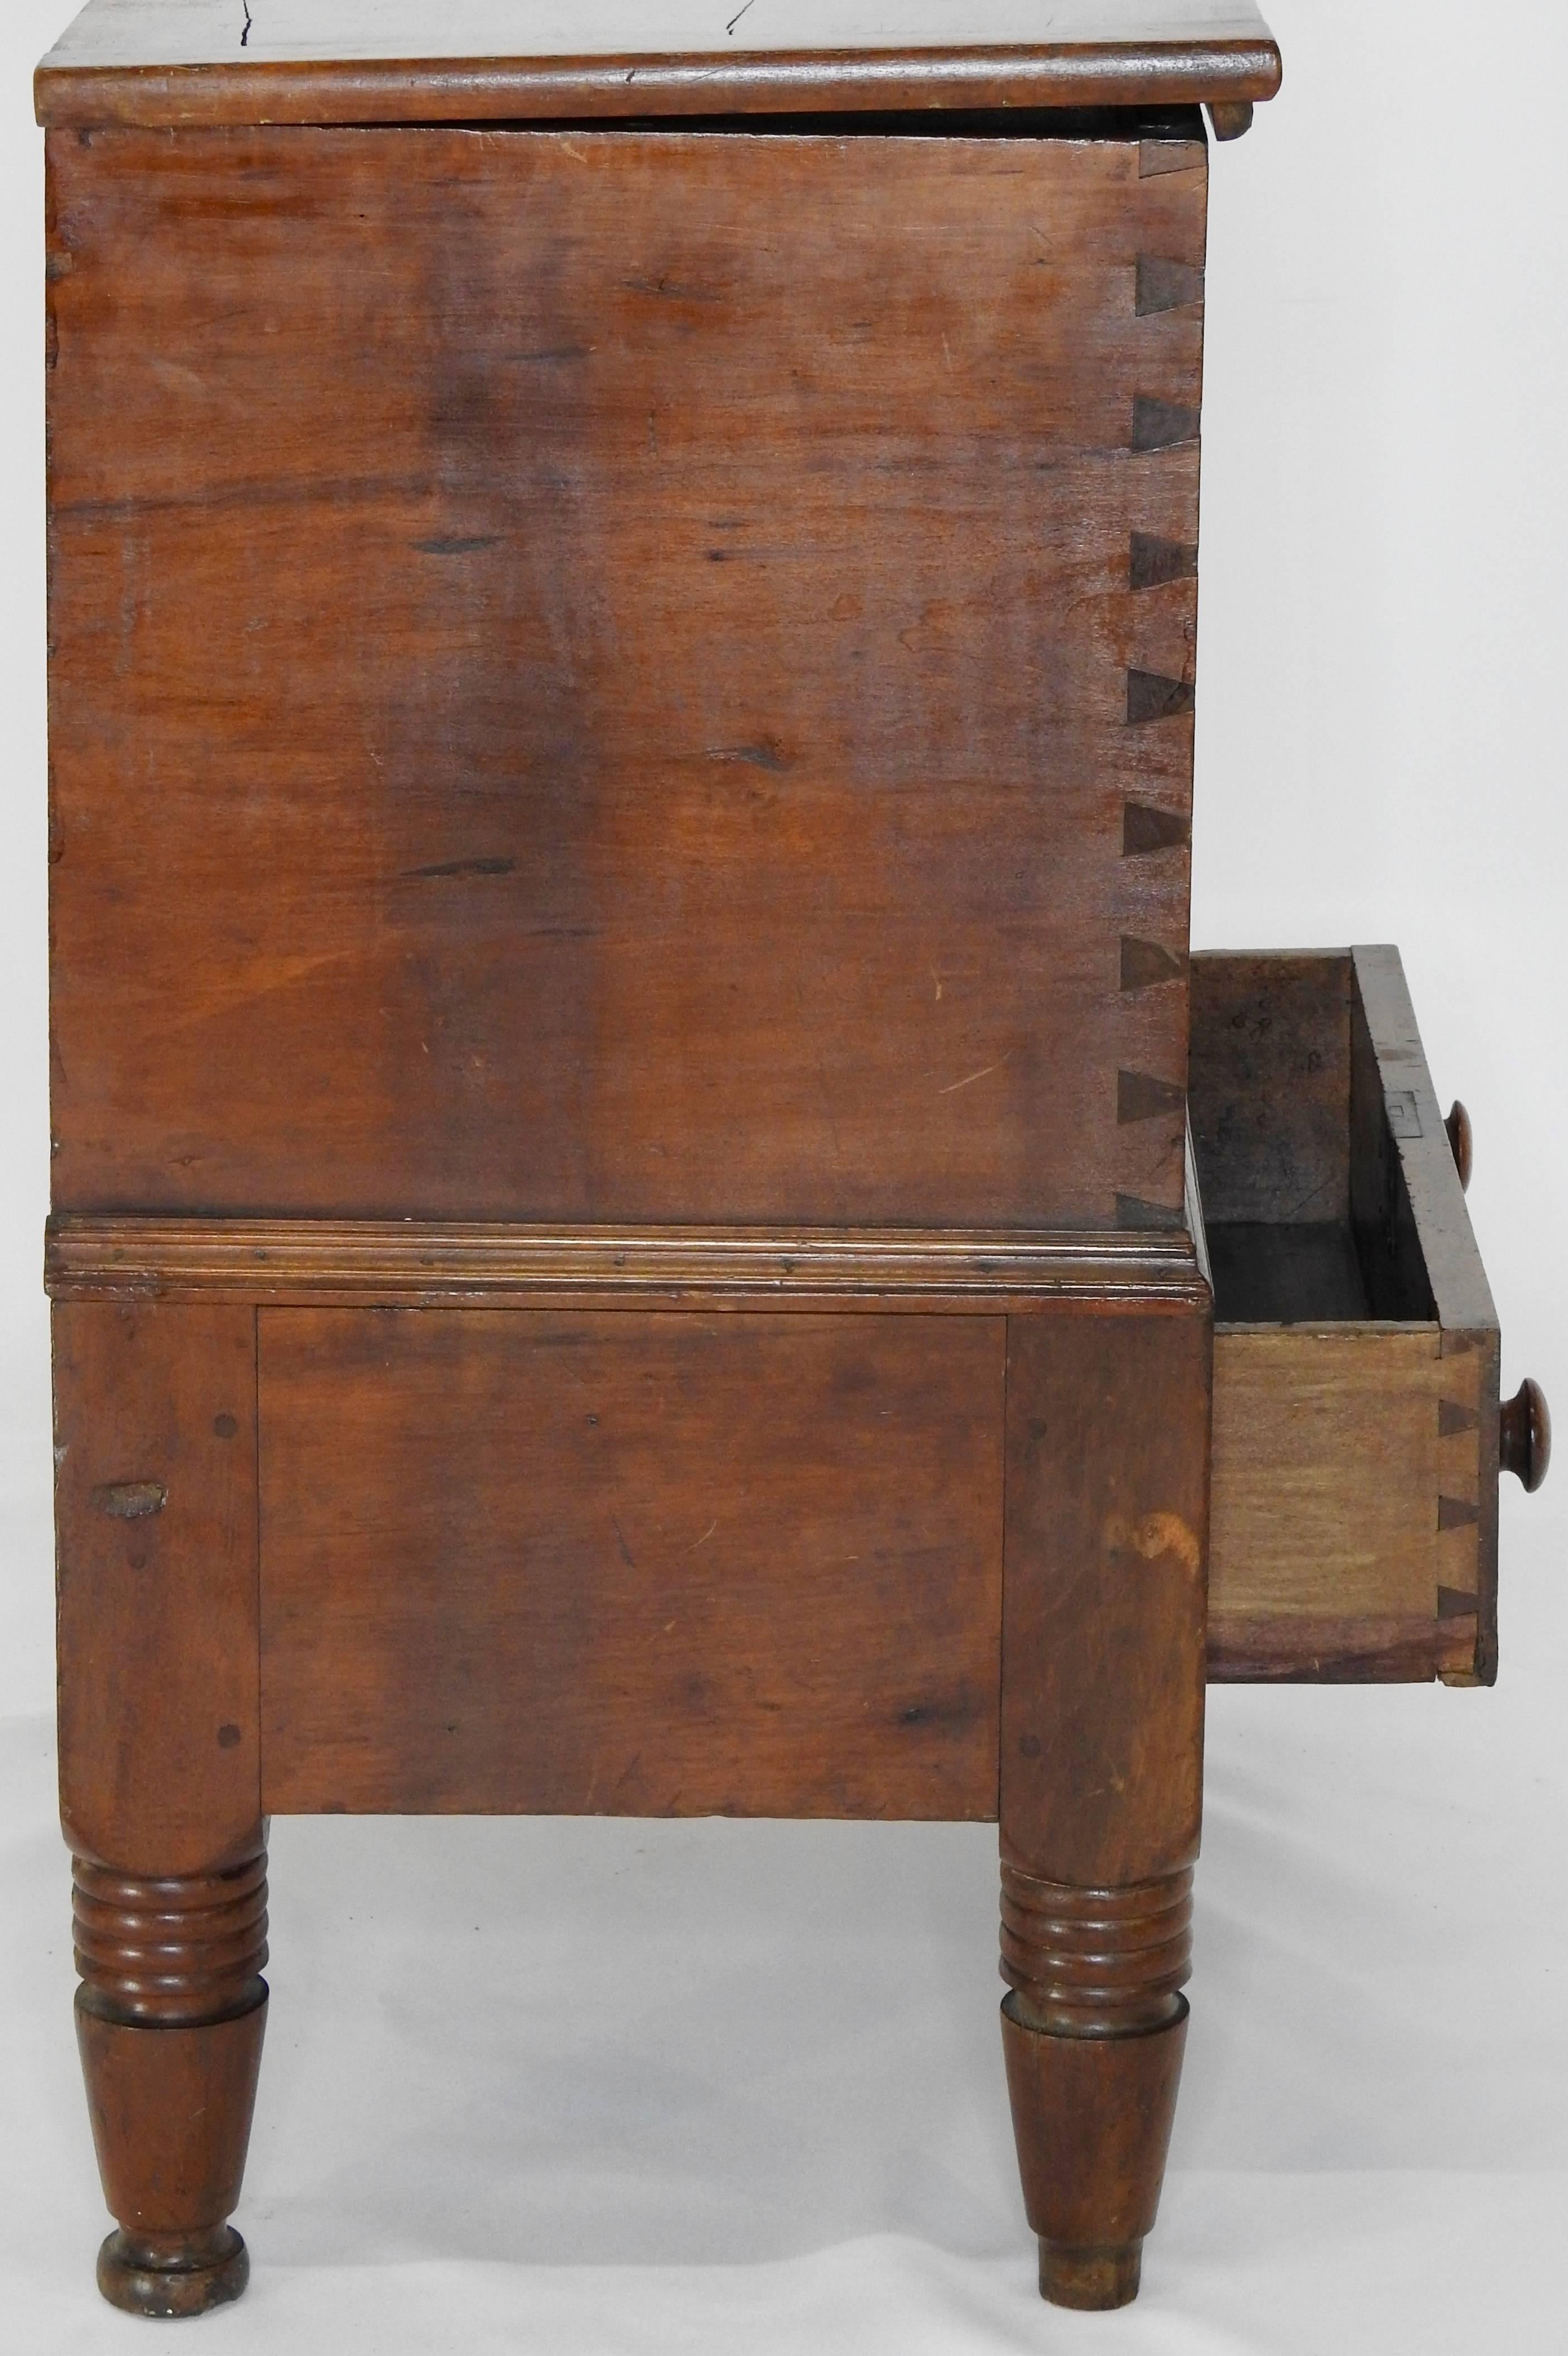 antique sugar chest